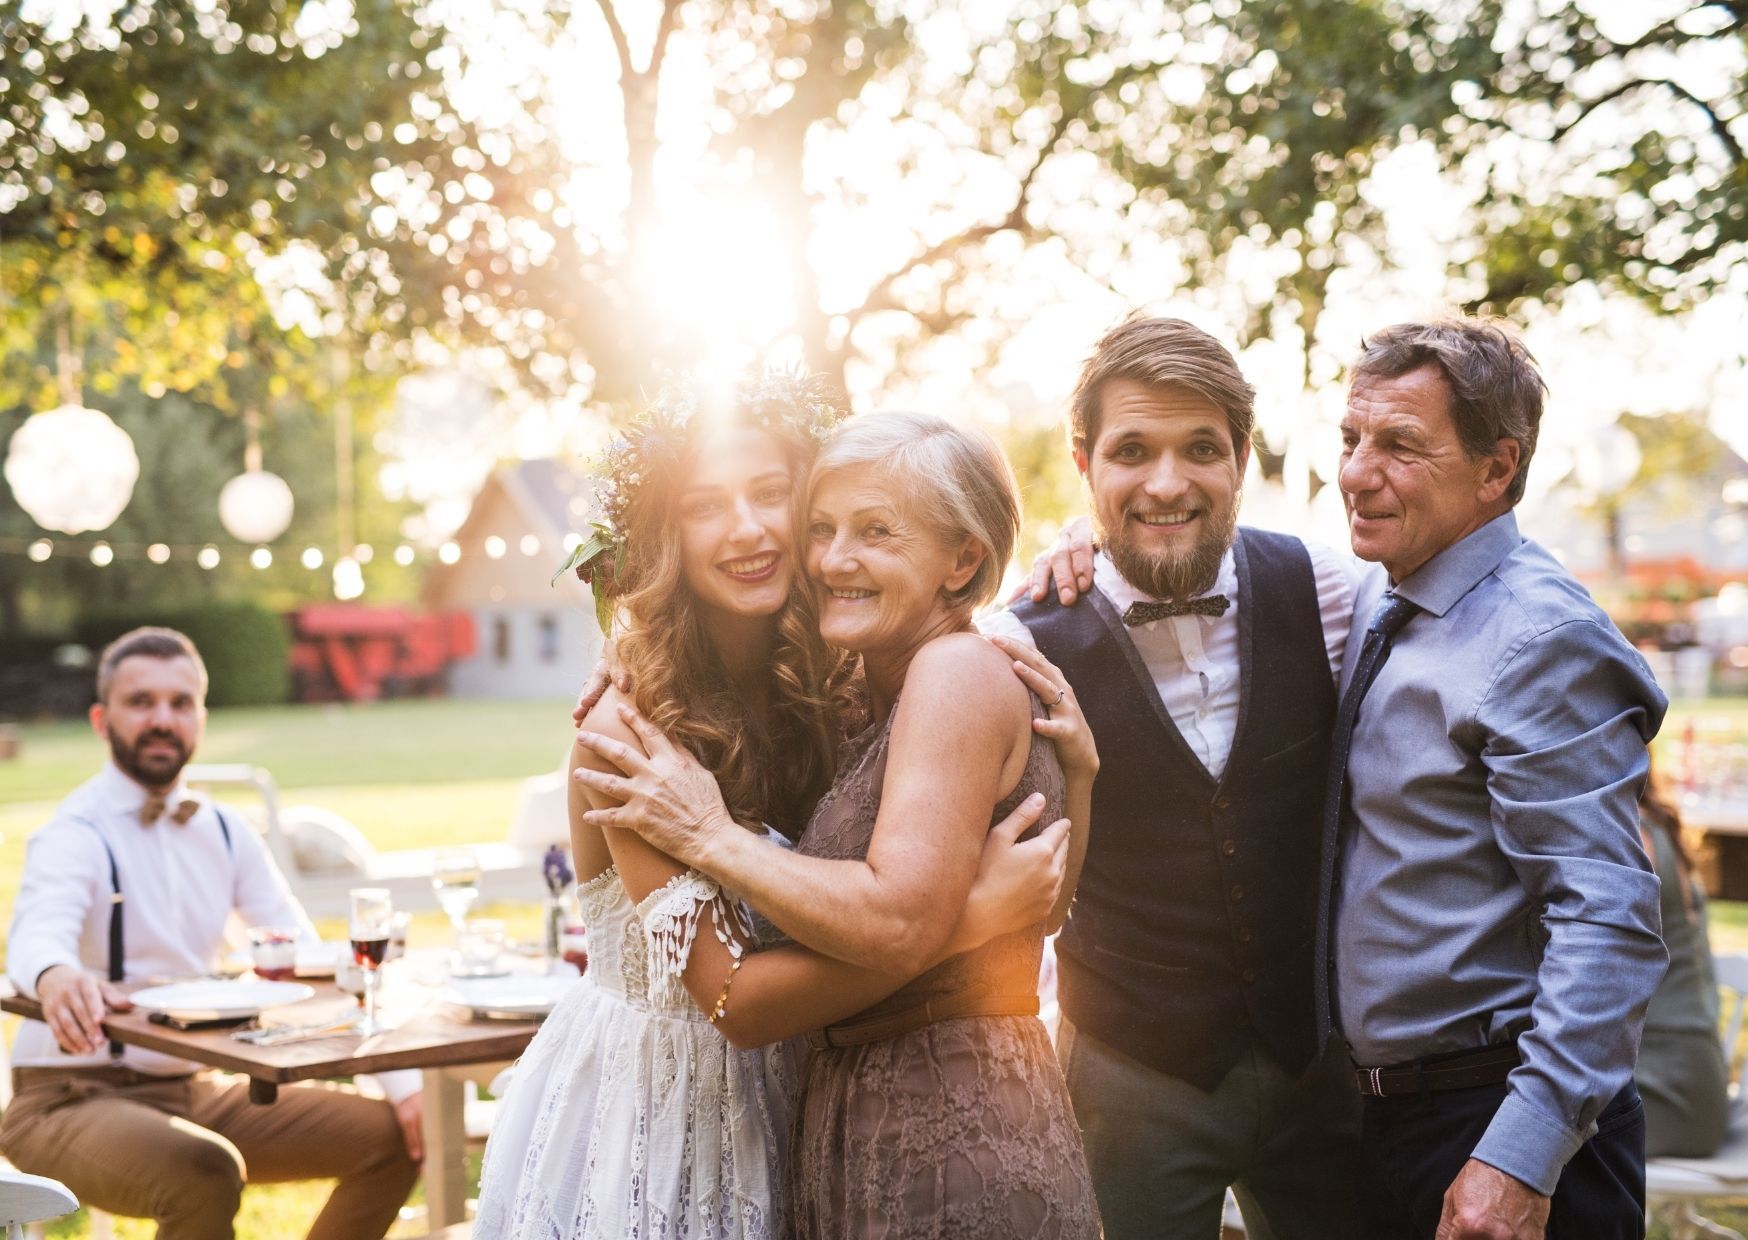 Eltern, die ihre Kinder verheiraten, sind bei jeder Hochzeit besonders berührt